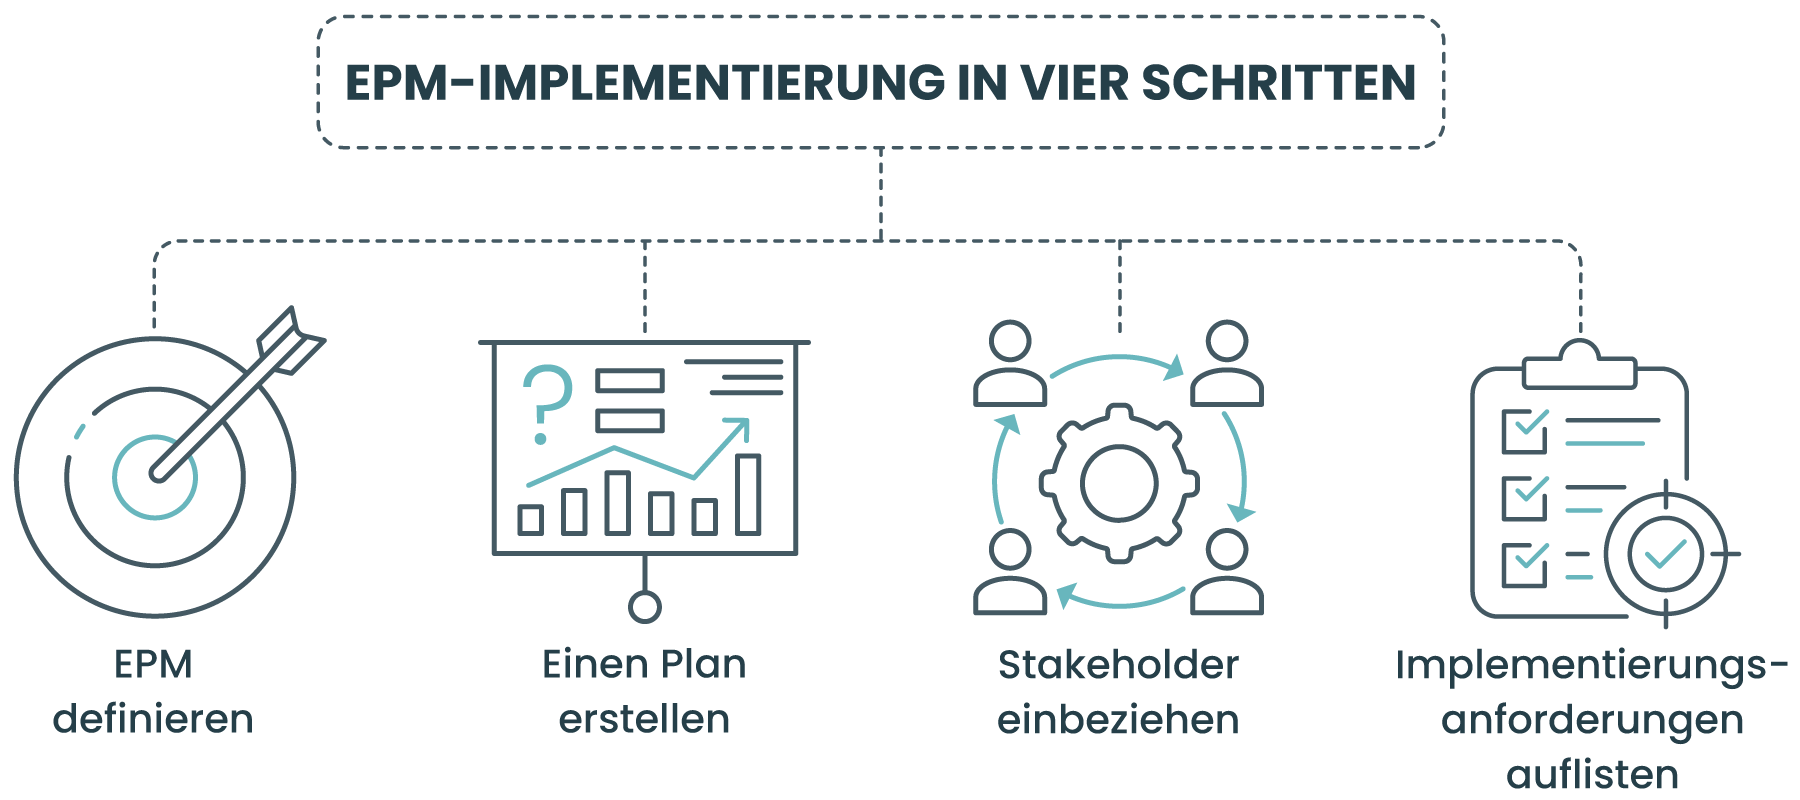 EPM-Implementierung in vier Schritten: